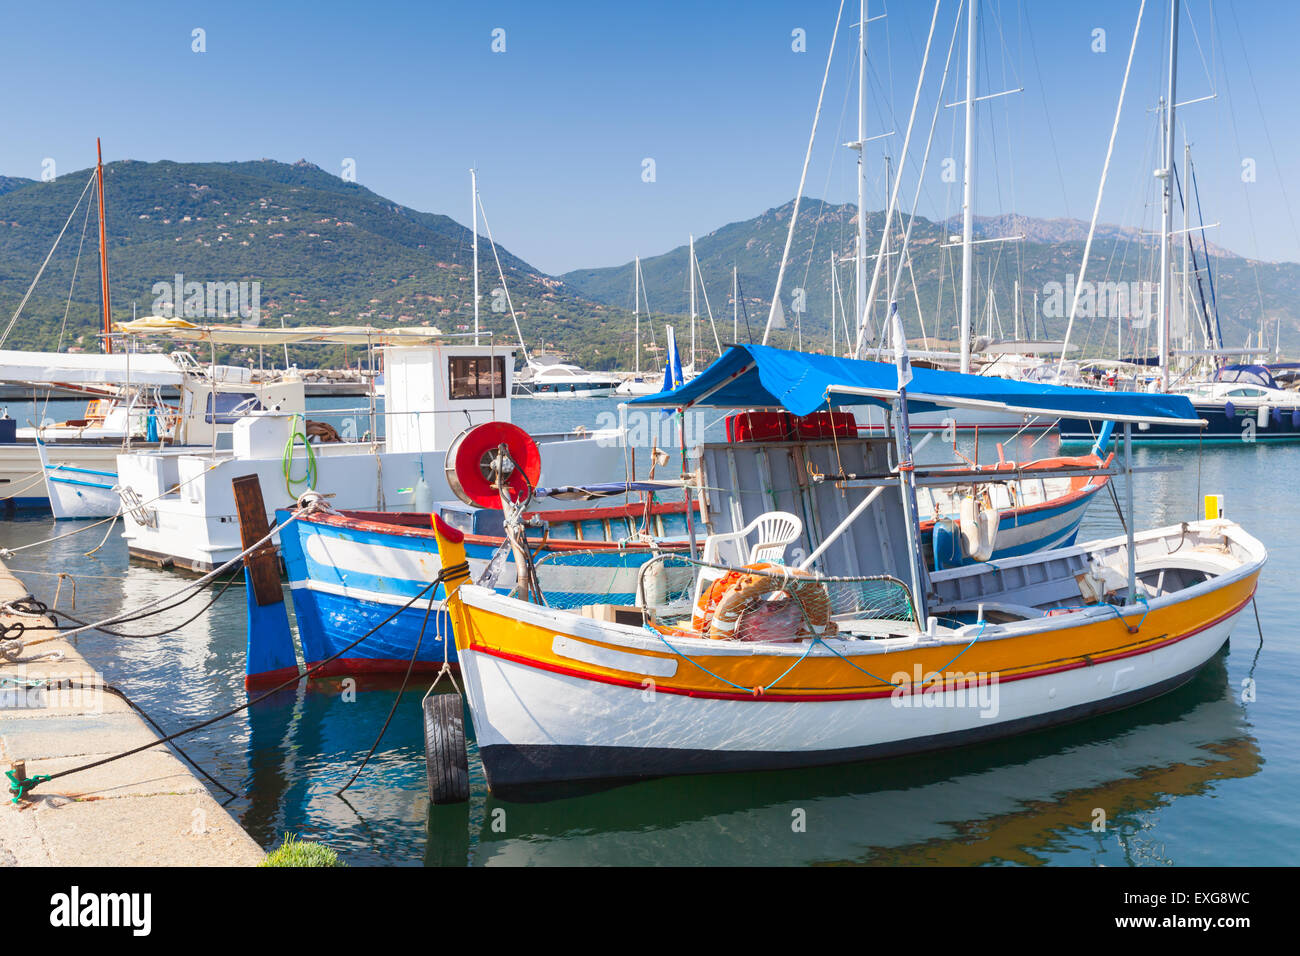 Les petits bateaux de pêche en bois colorés amarrés dans la ville de Propriano, Corse, France Banque D'Images